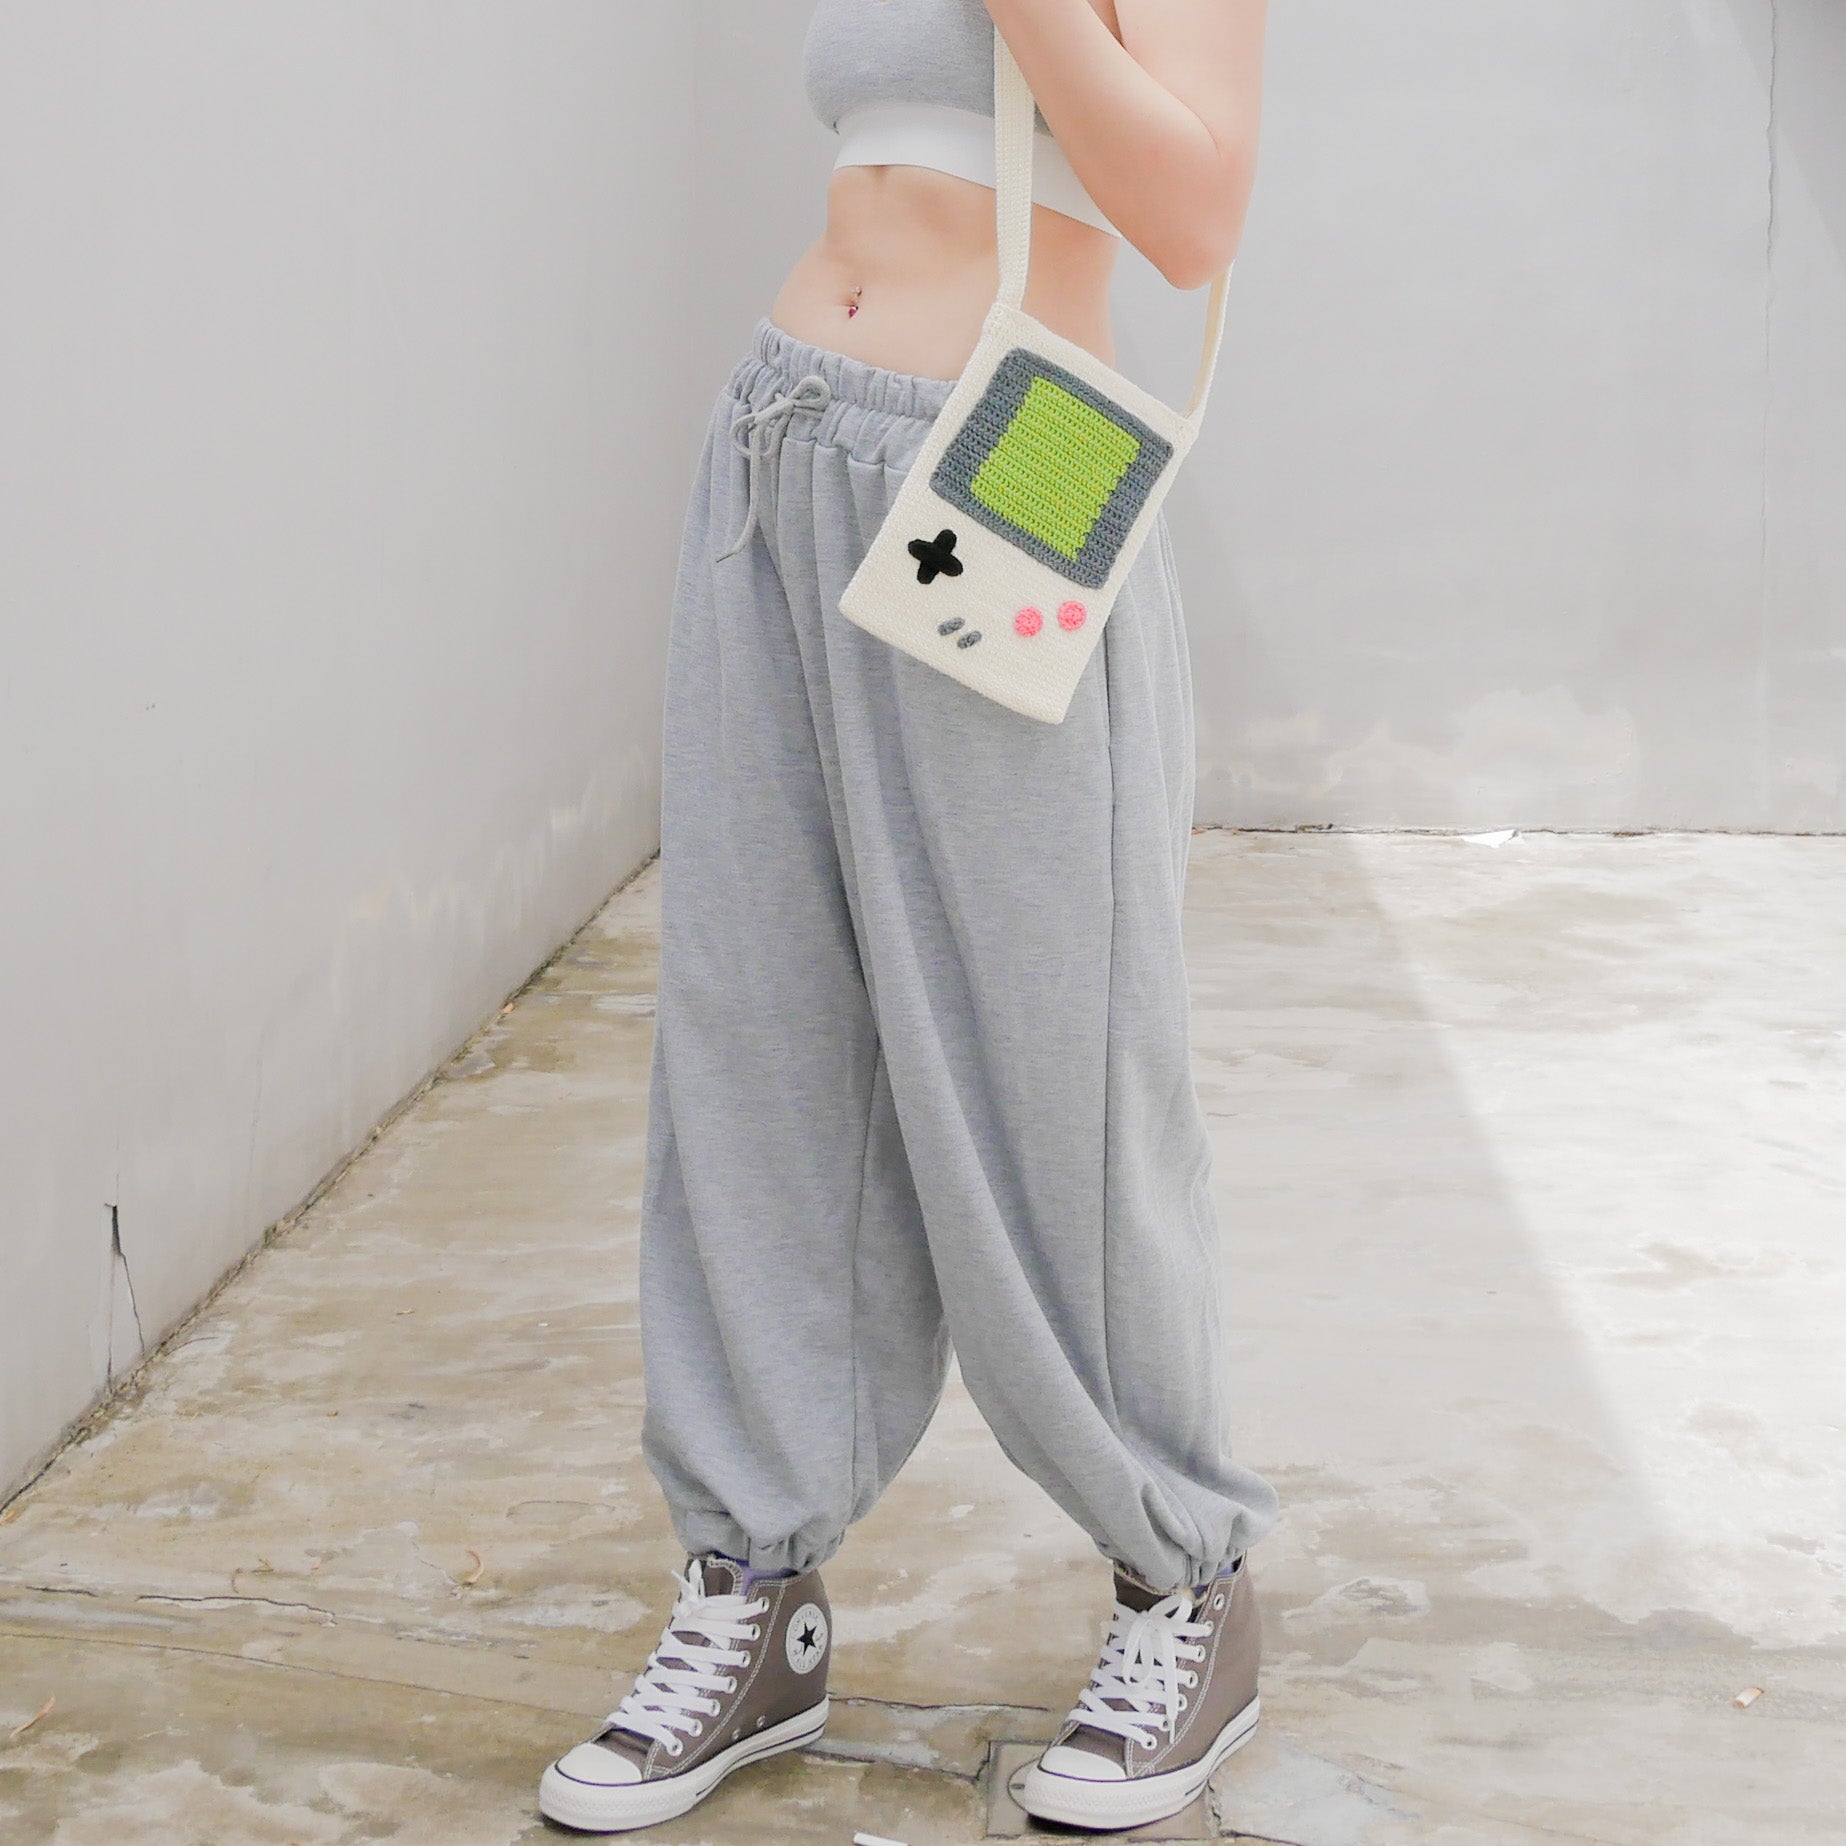 GameBoy Inspired Bag - White